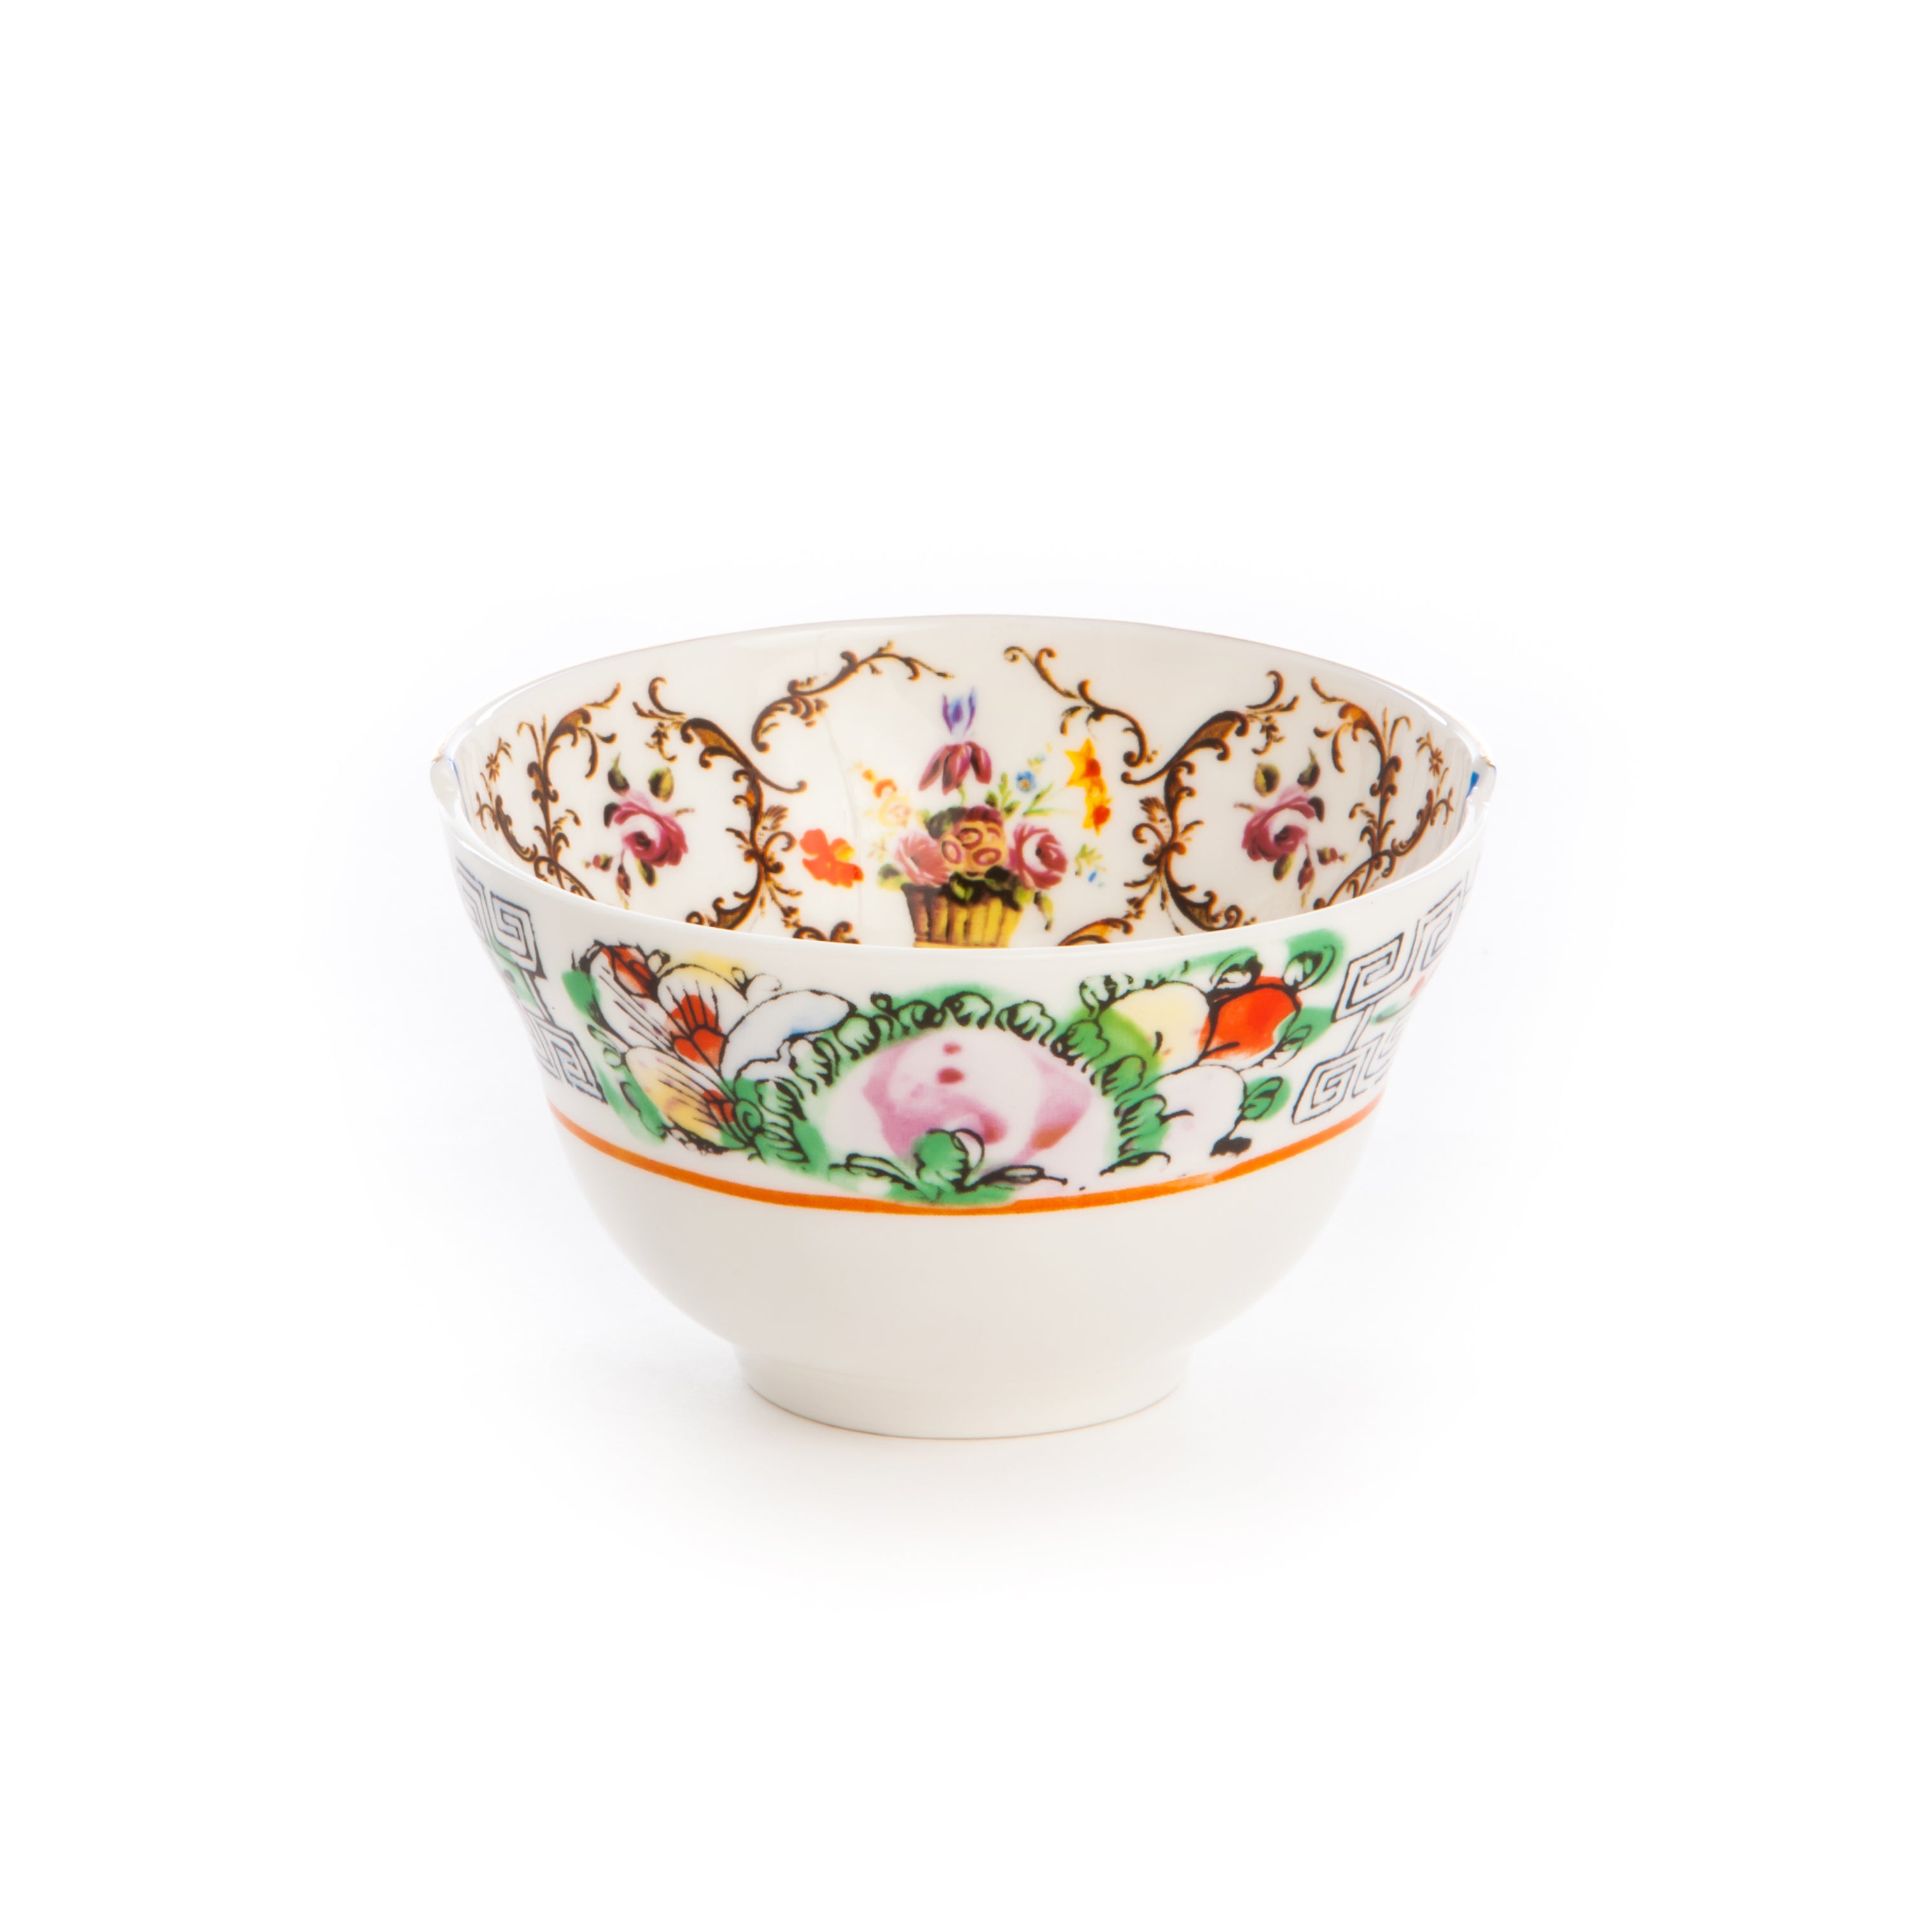 Seletti Hybrid Porcelain fruit bowl